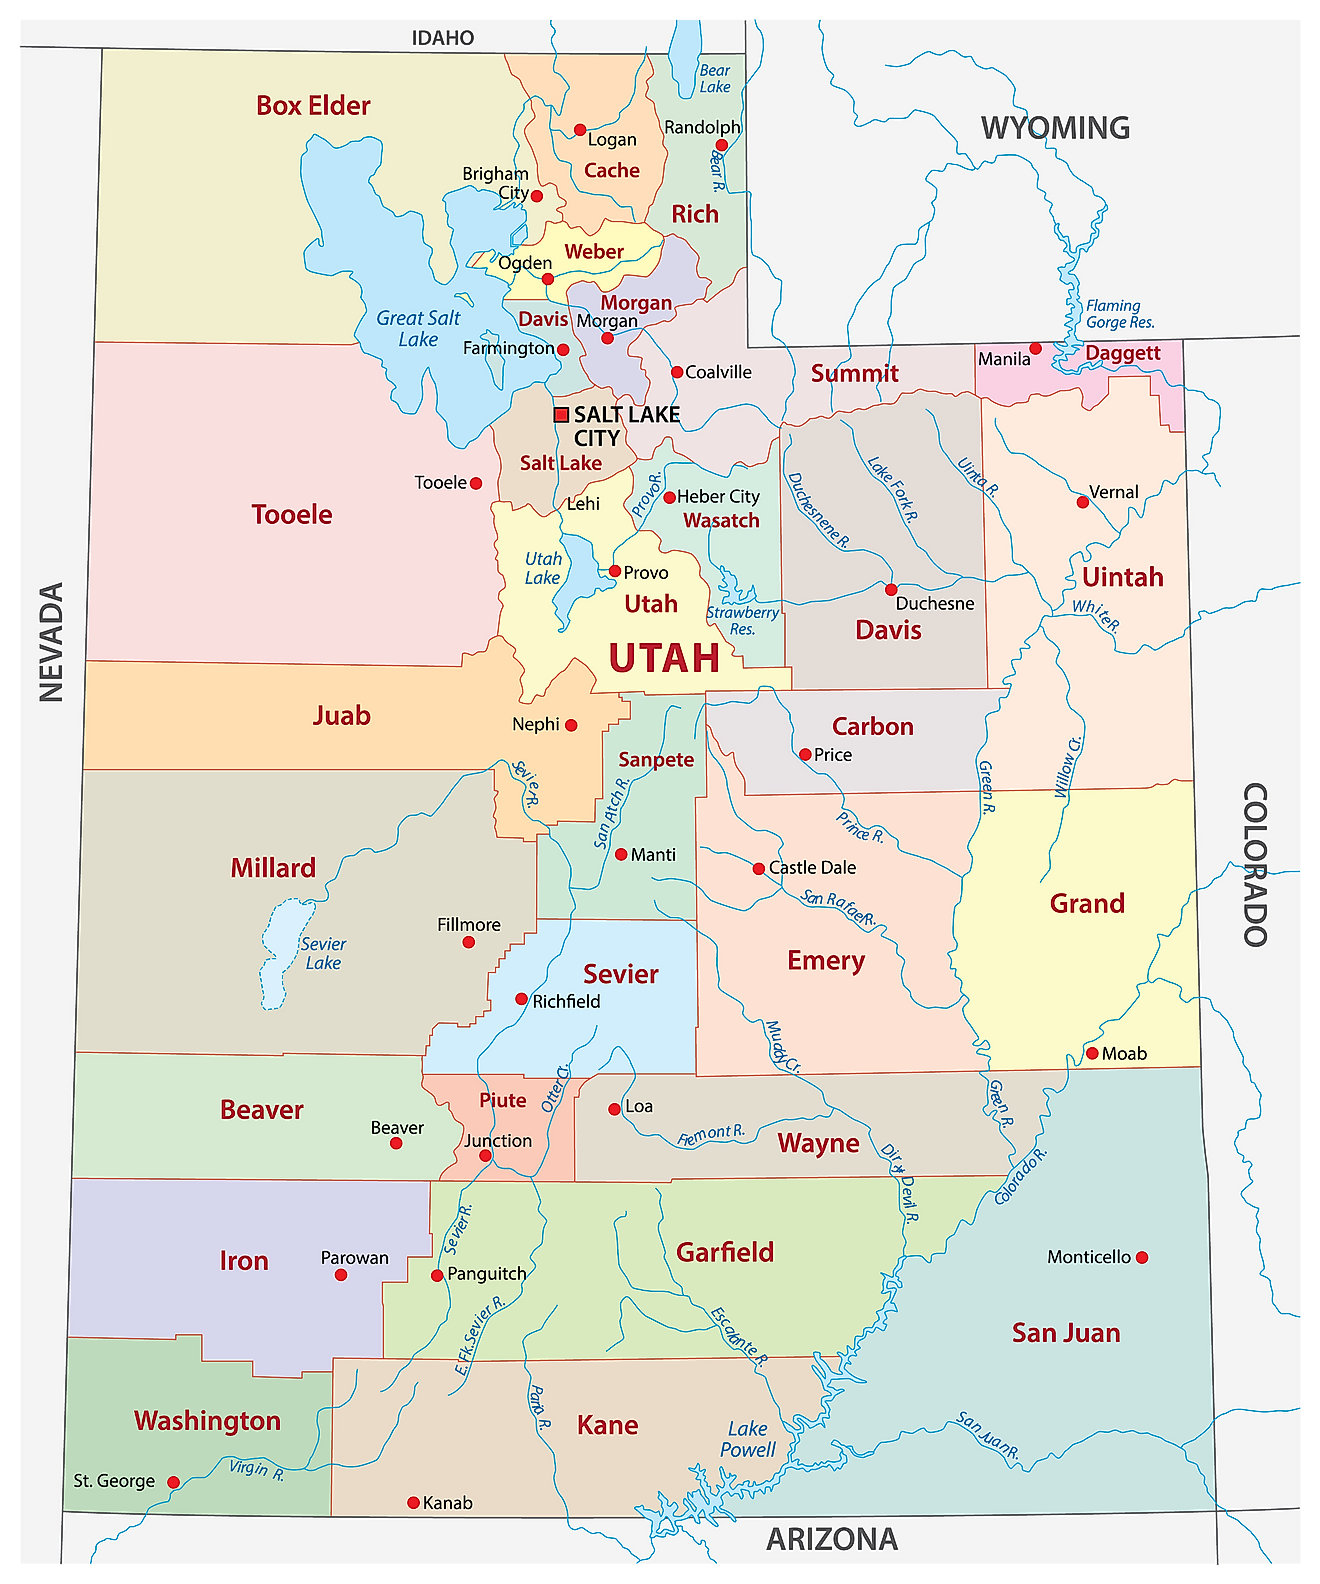 خريطة إدارية لولاية يوتا تُظهر مقاطعاتها الـ 29 والعاصمة - مدينة سالت ليك